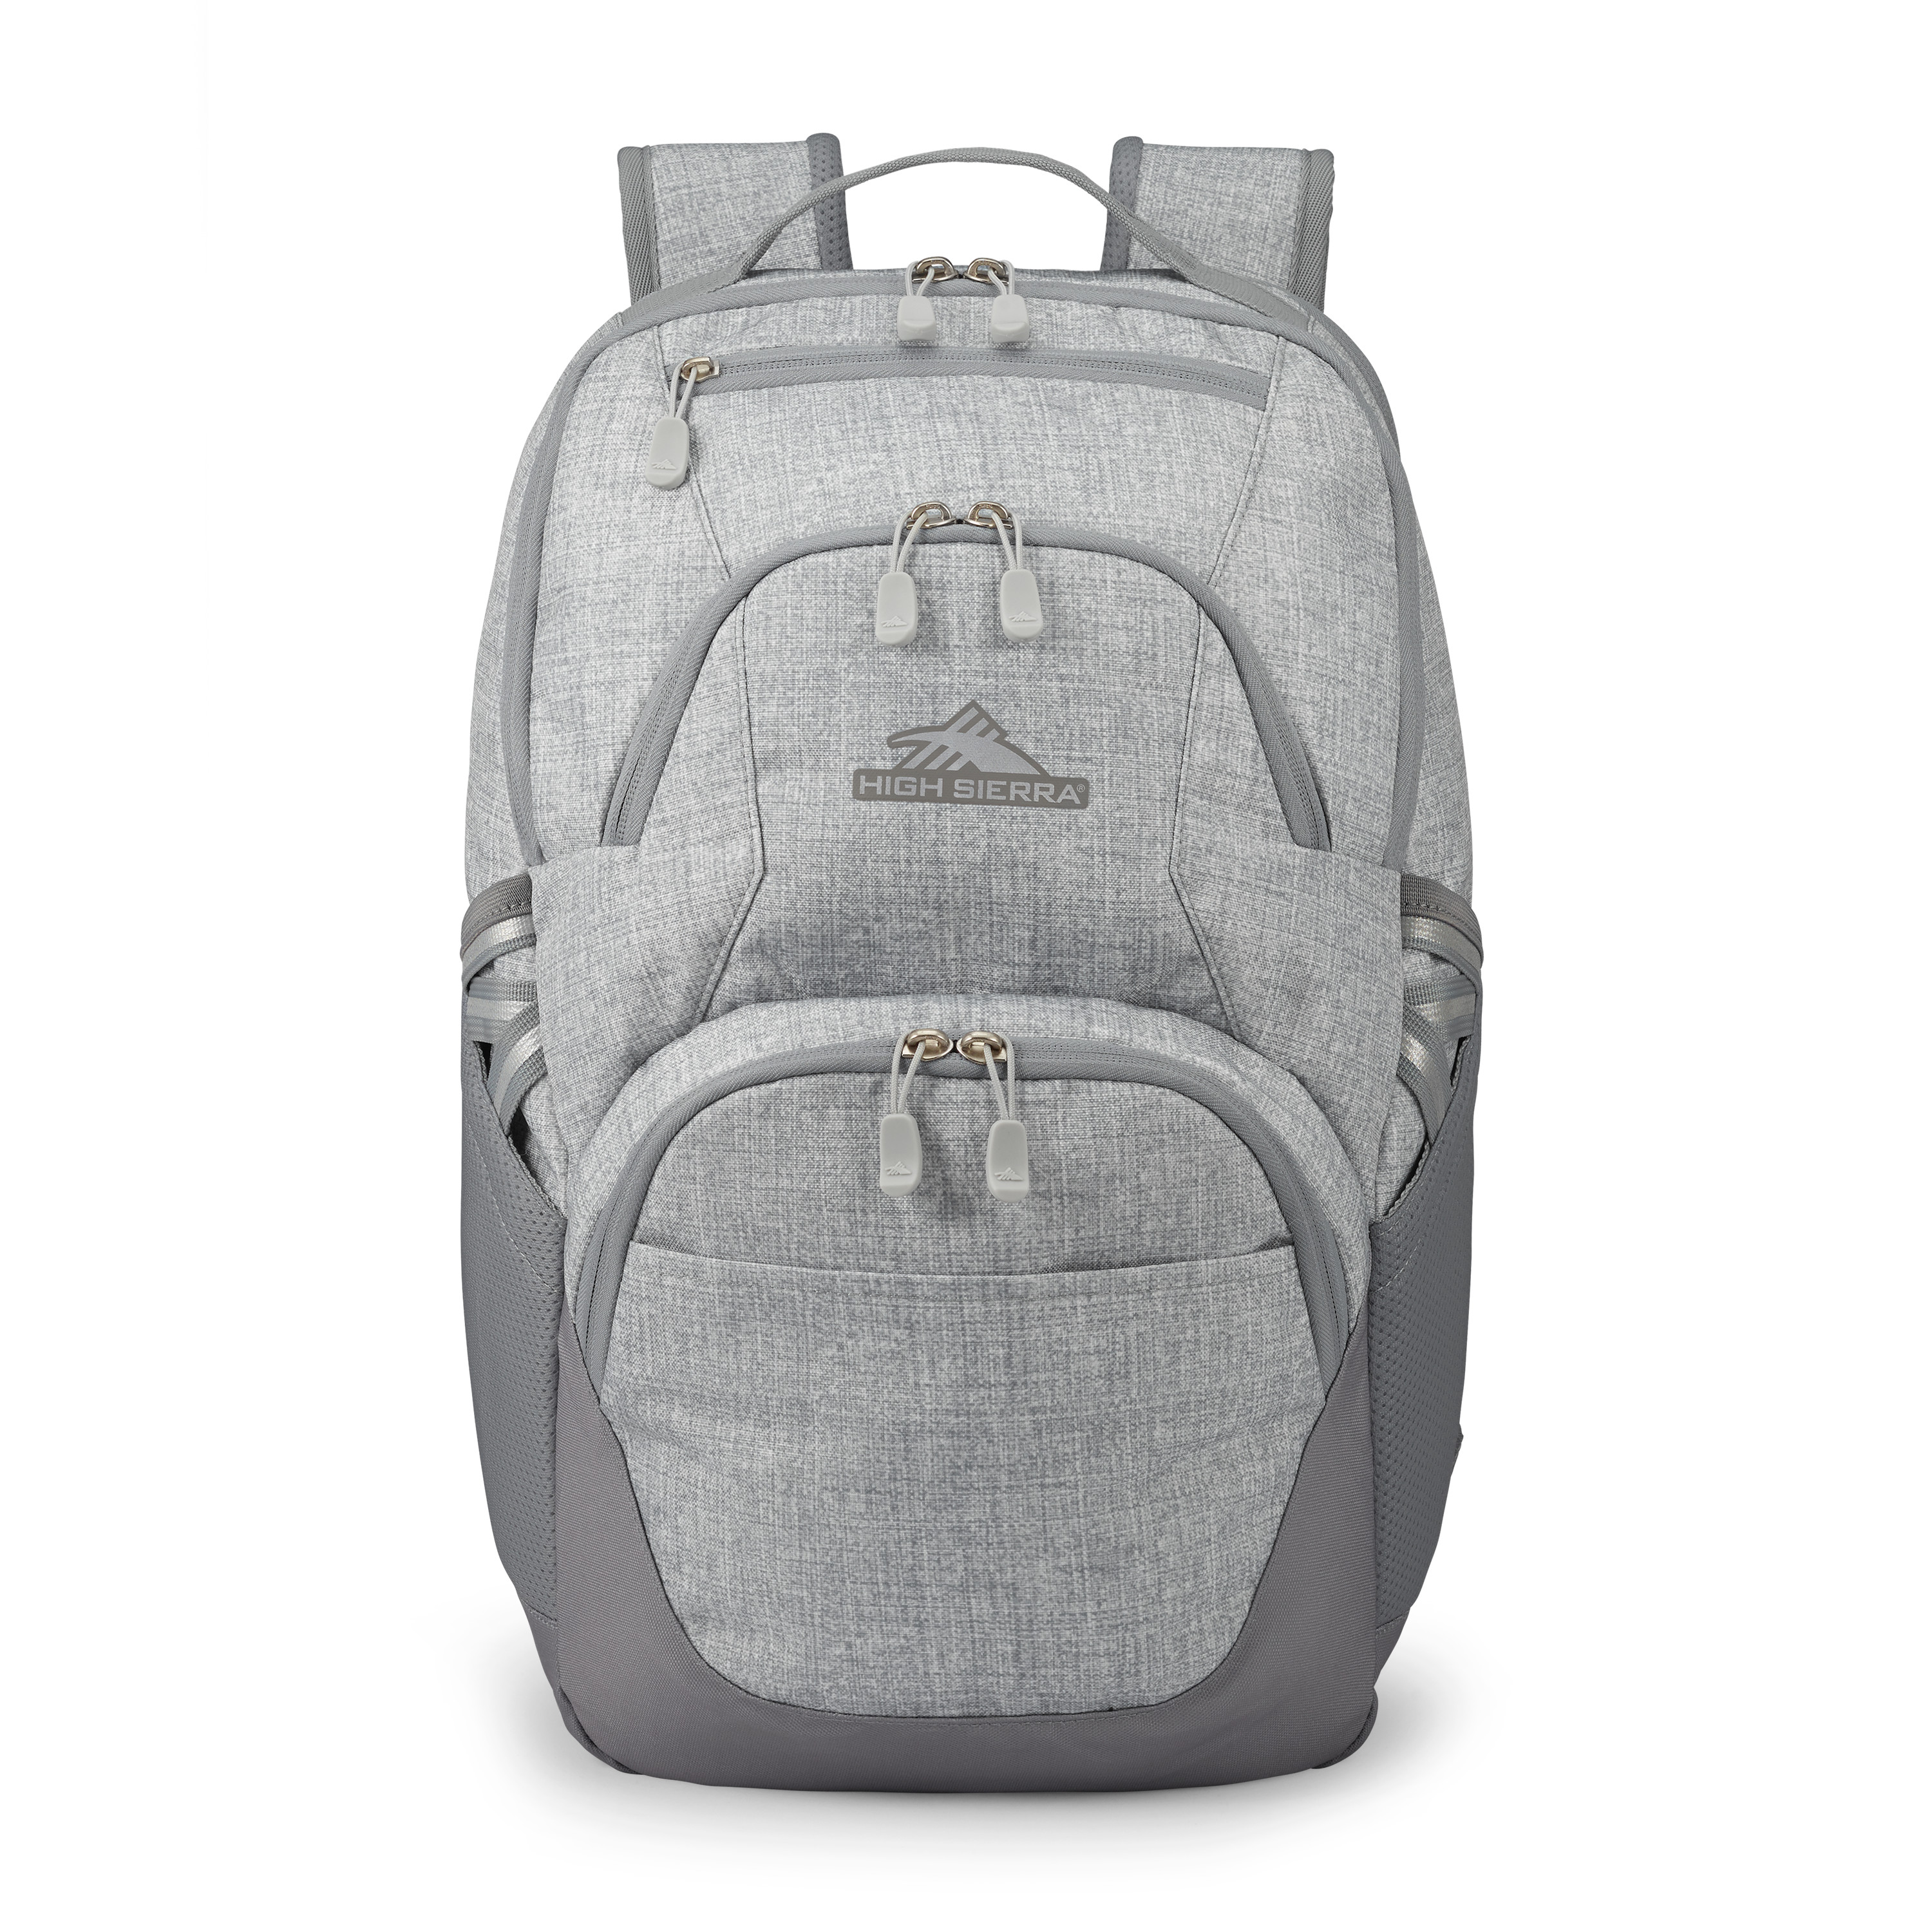 Buy Swoop SG Backpack for USD 39.99 | High Sierra